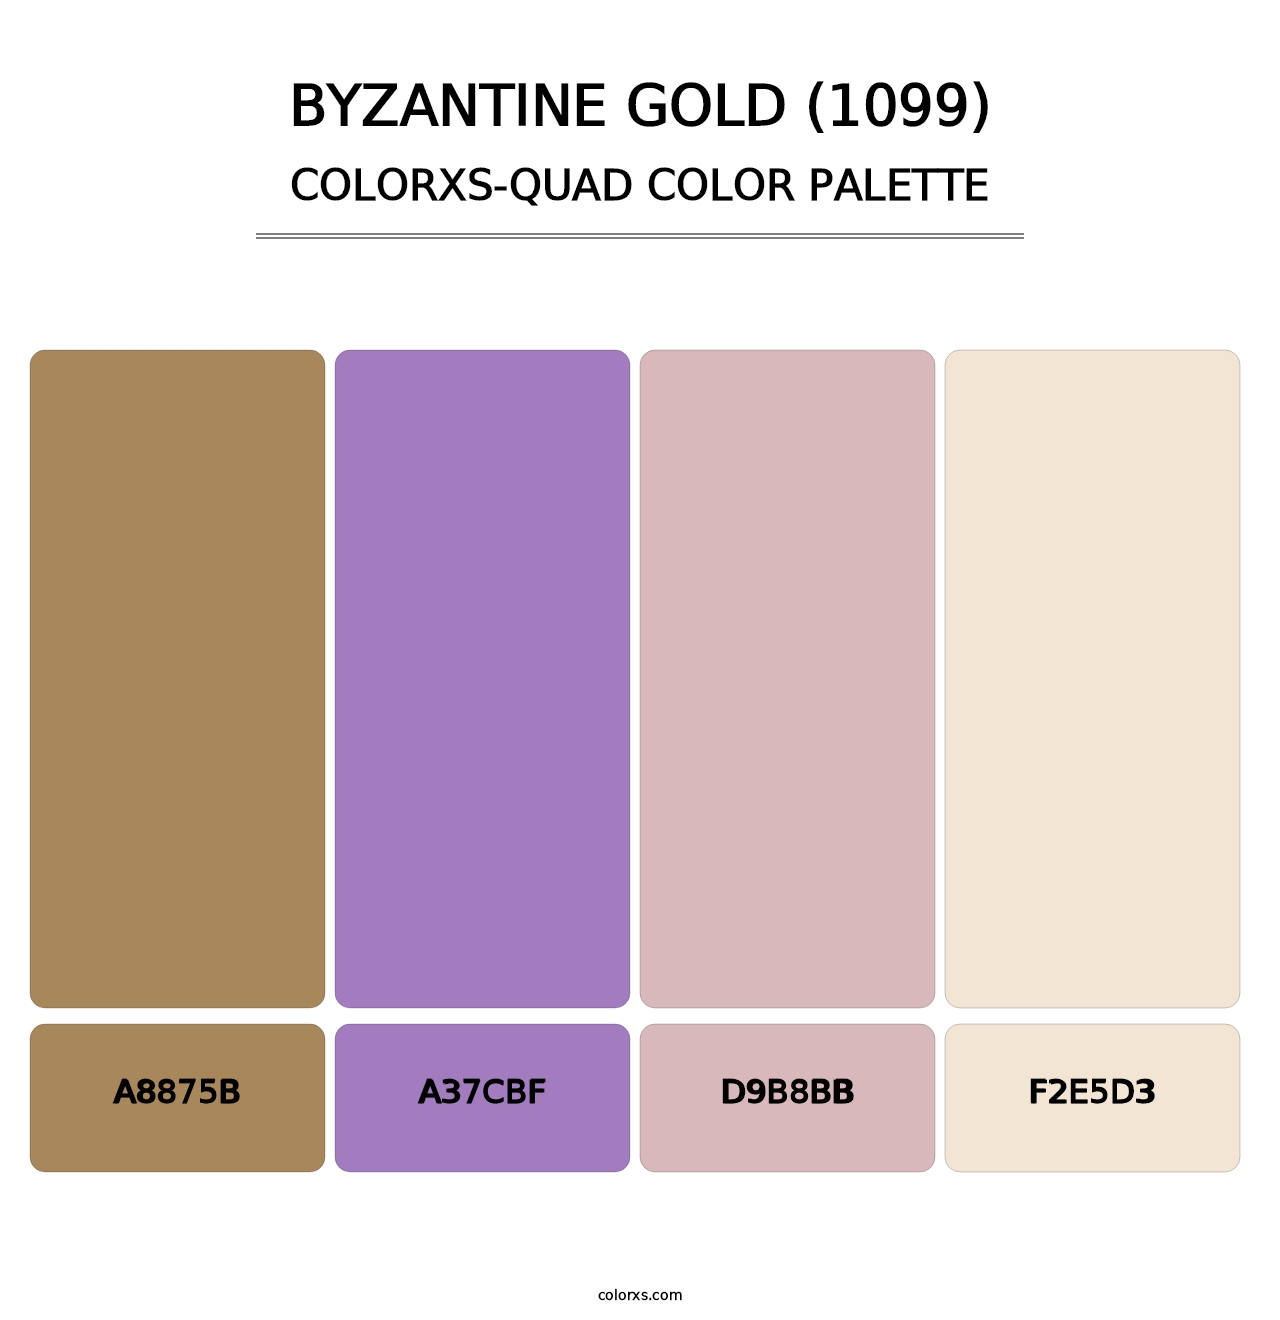 Byzantine Gold (1099) - Colorxs Quad Palette